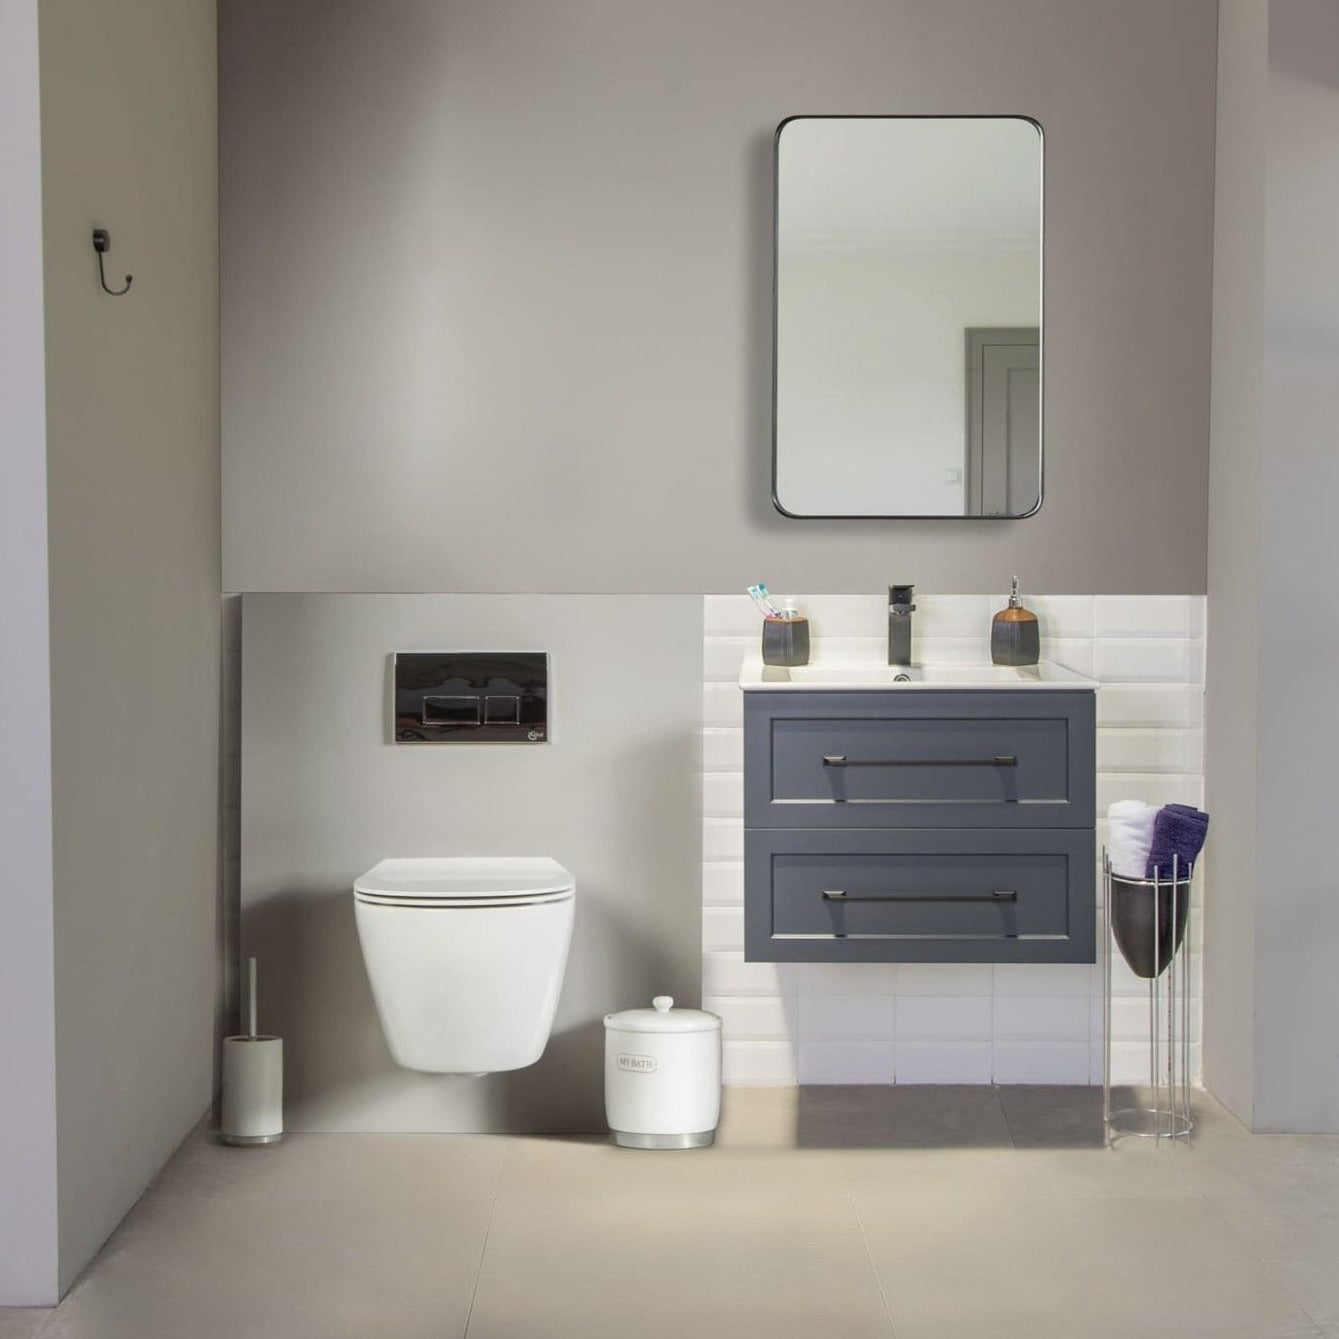 Nova Bathroom Vanity Homelero 24" #size_24" #color_dark grey #hardware_black